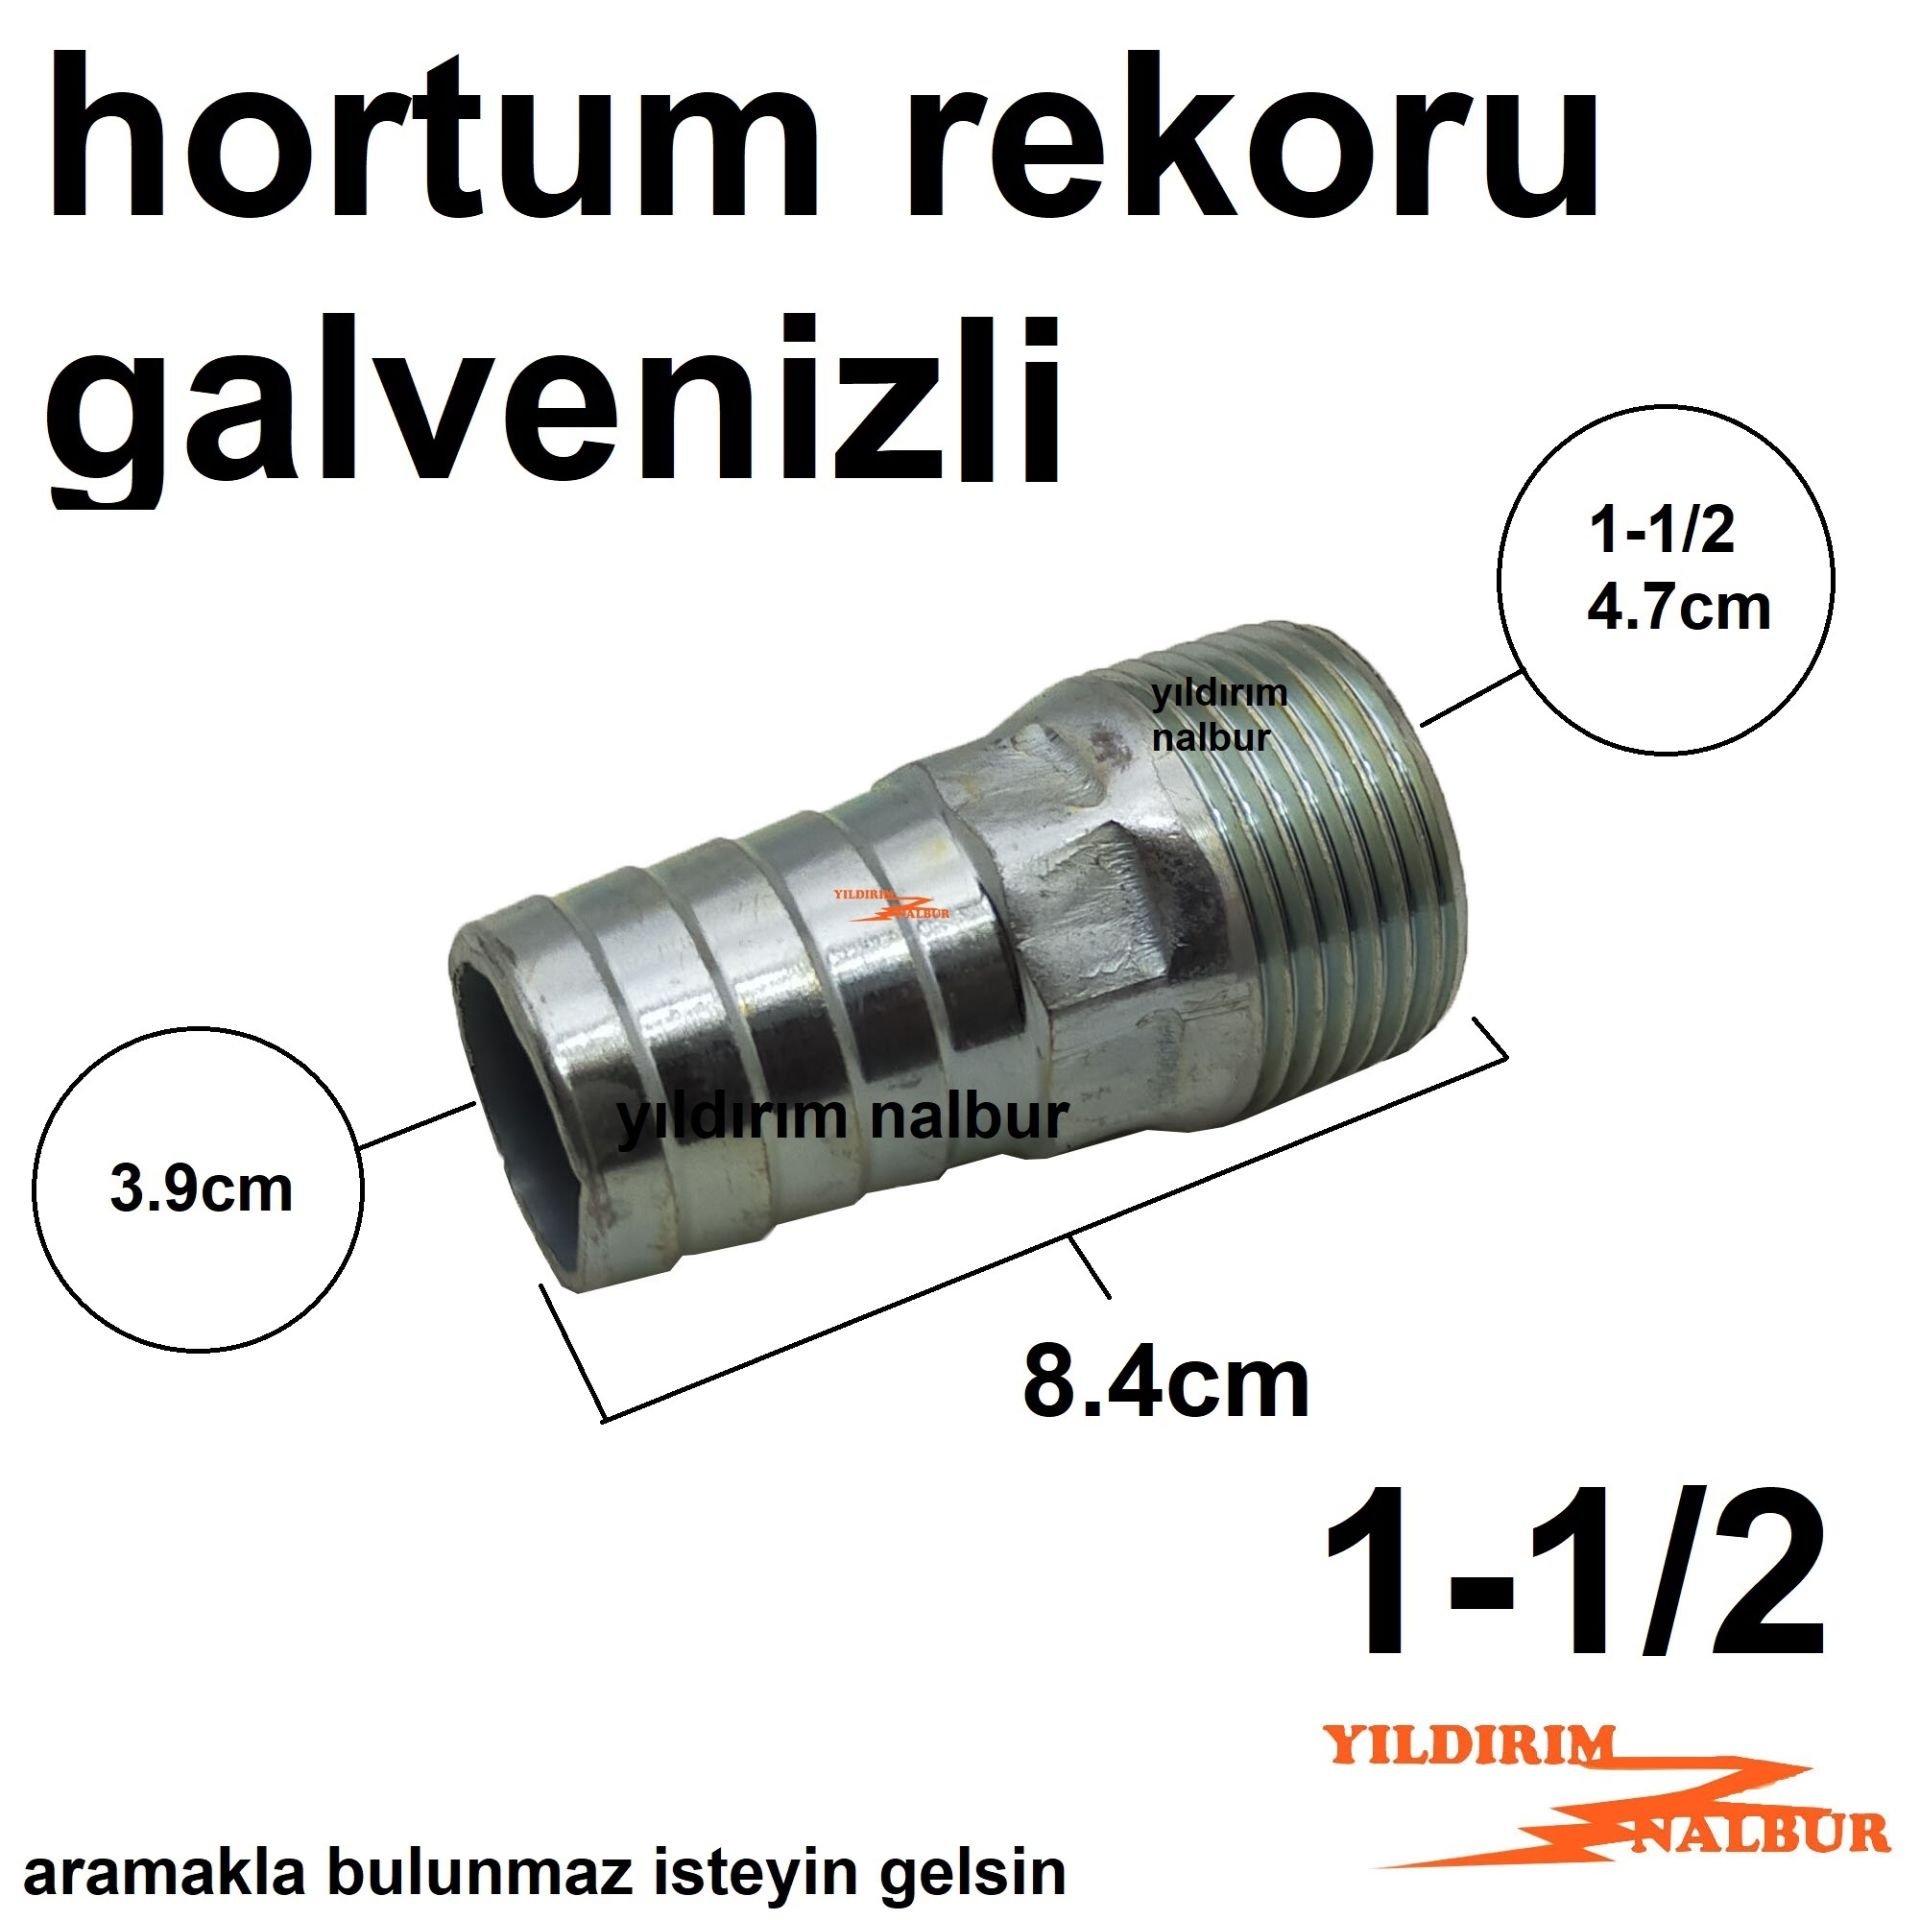 GALVENİZLİ HORTUM REKORU 1-1/2 SU DEPOSU REKORU 1.5 PARMAK